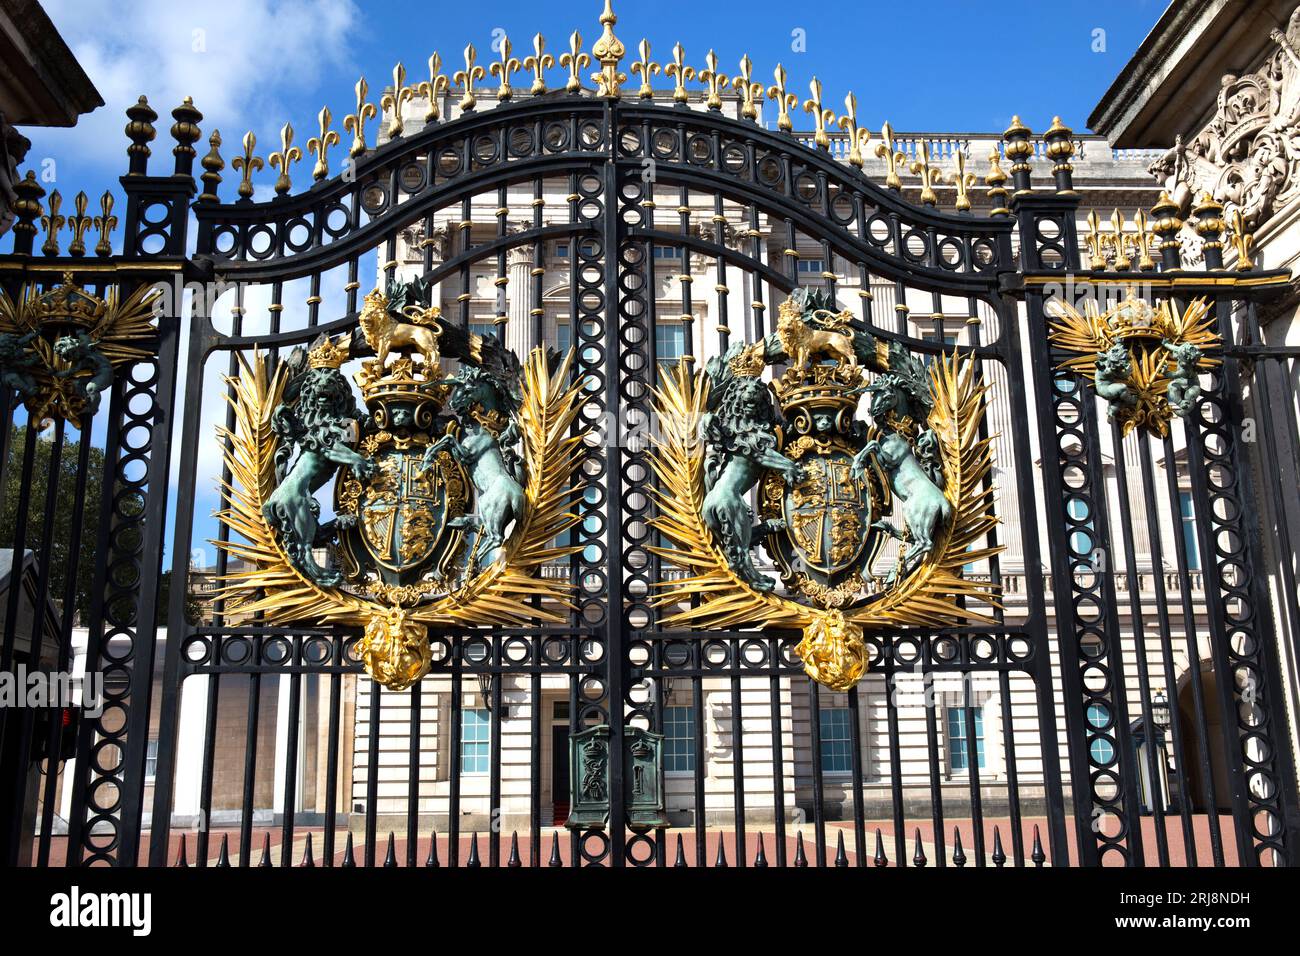 Emblem Gates Buckingham Palace London Stock Photo